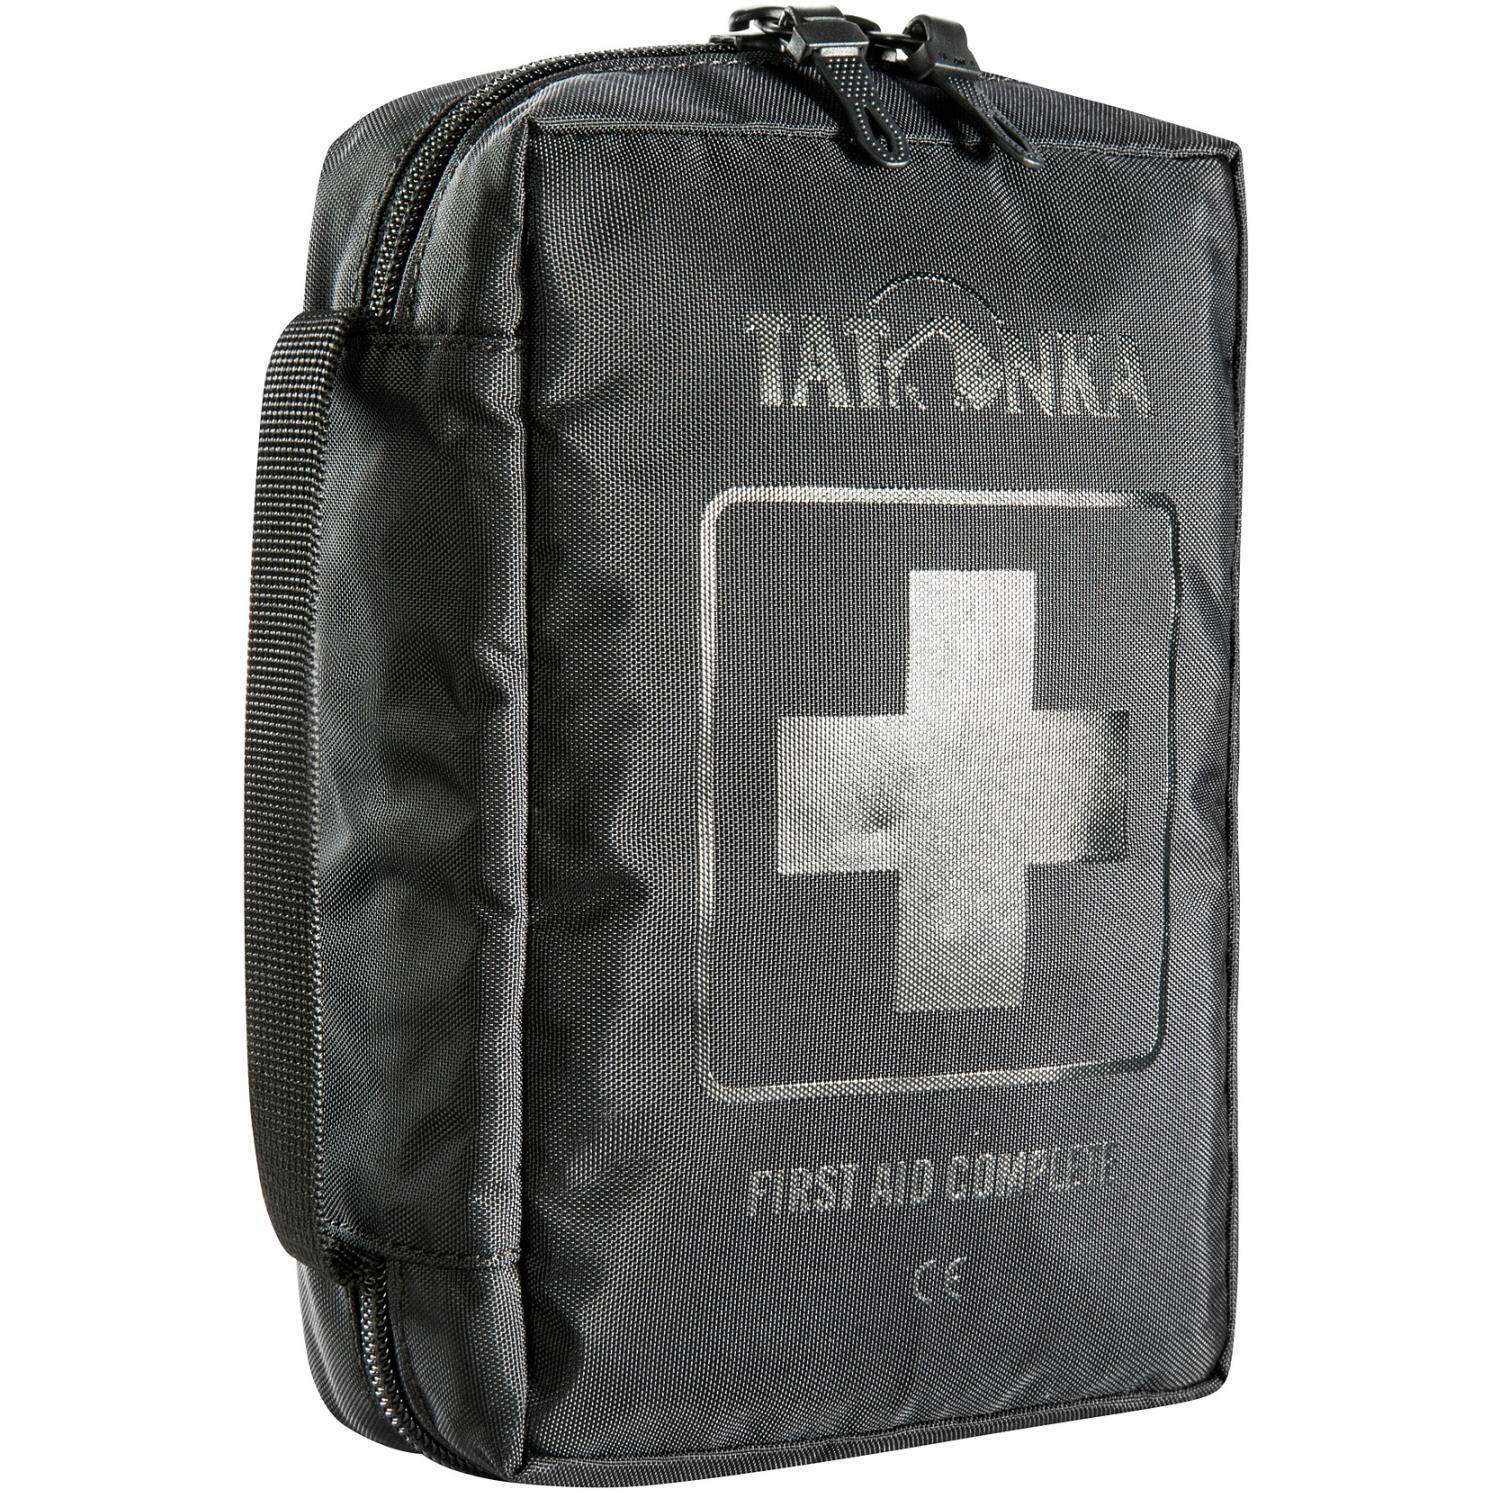 Produktbild von Tatonka First Aid Complete Erste-Hilfe-Set - schwarz